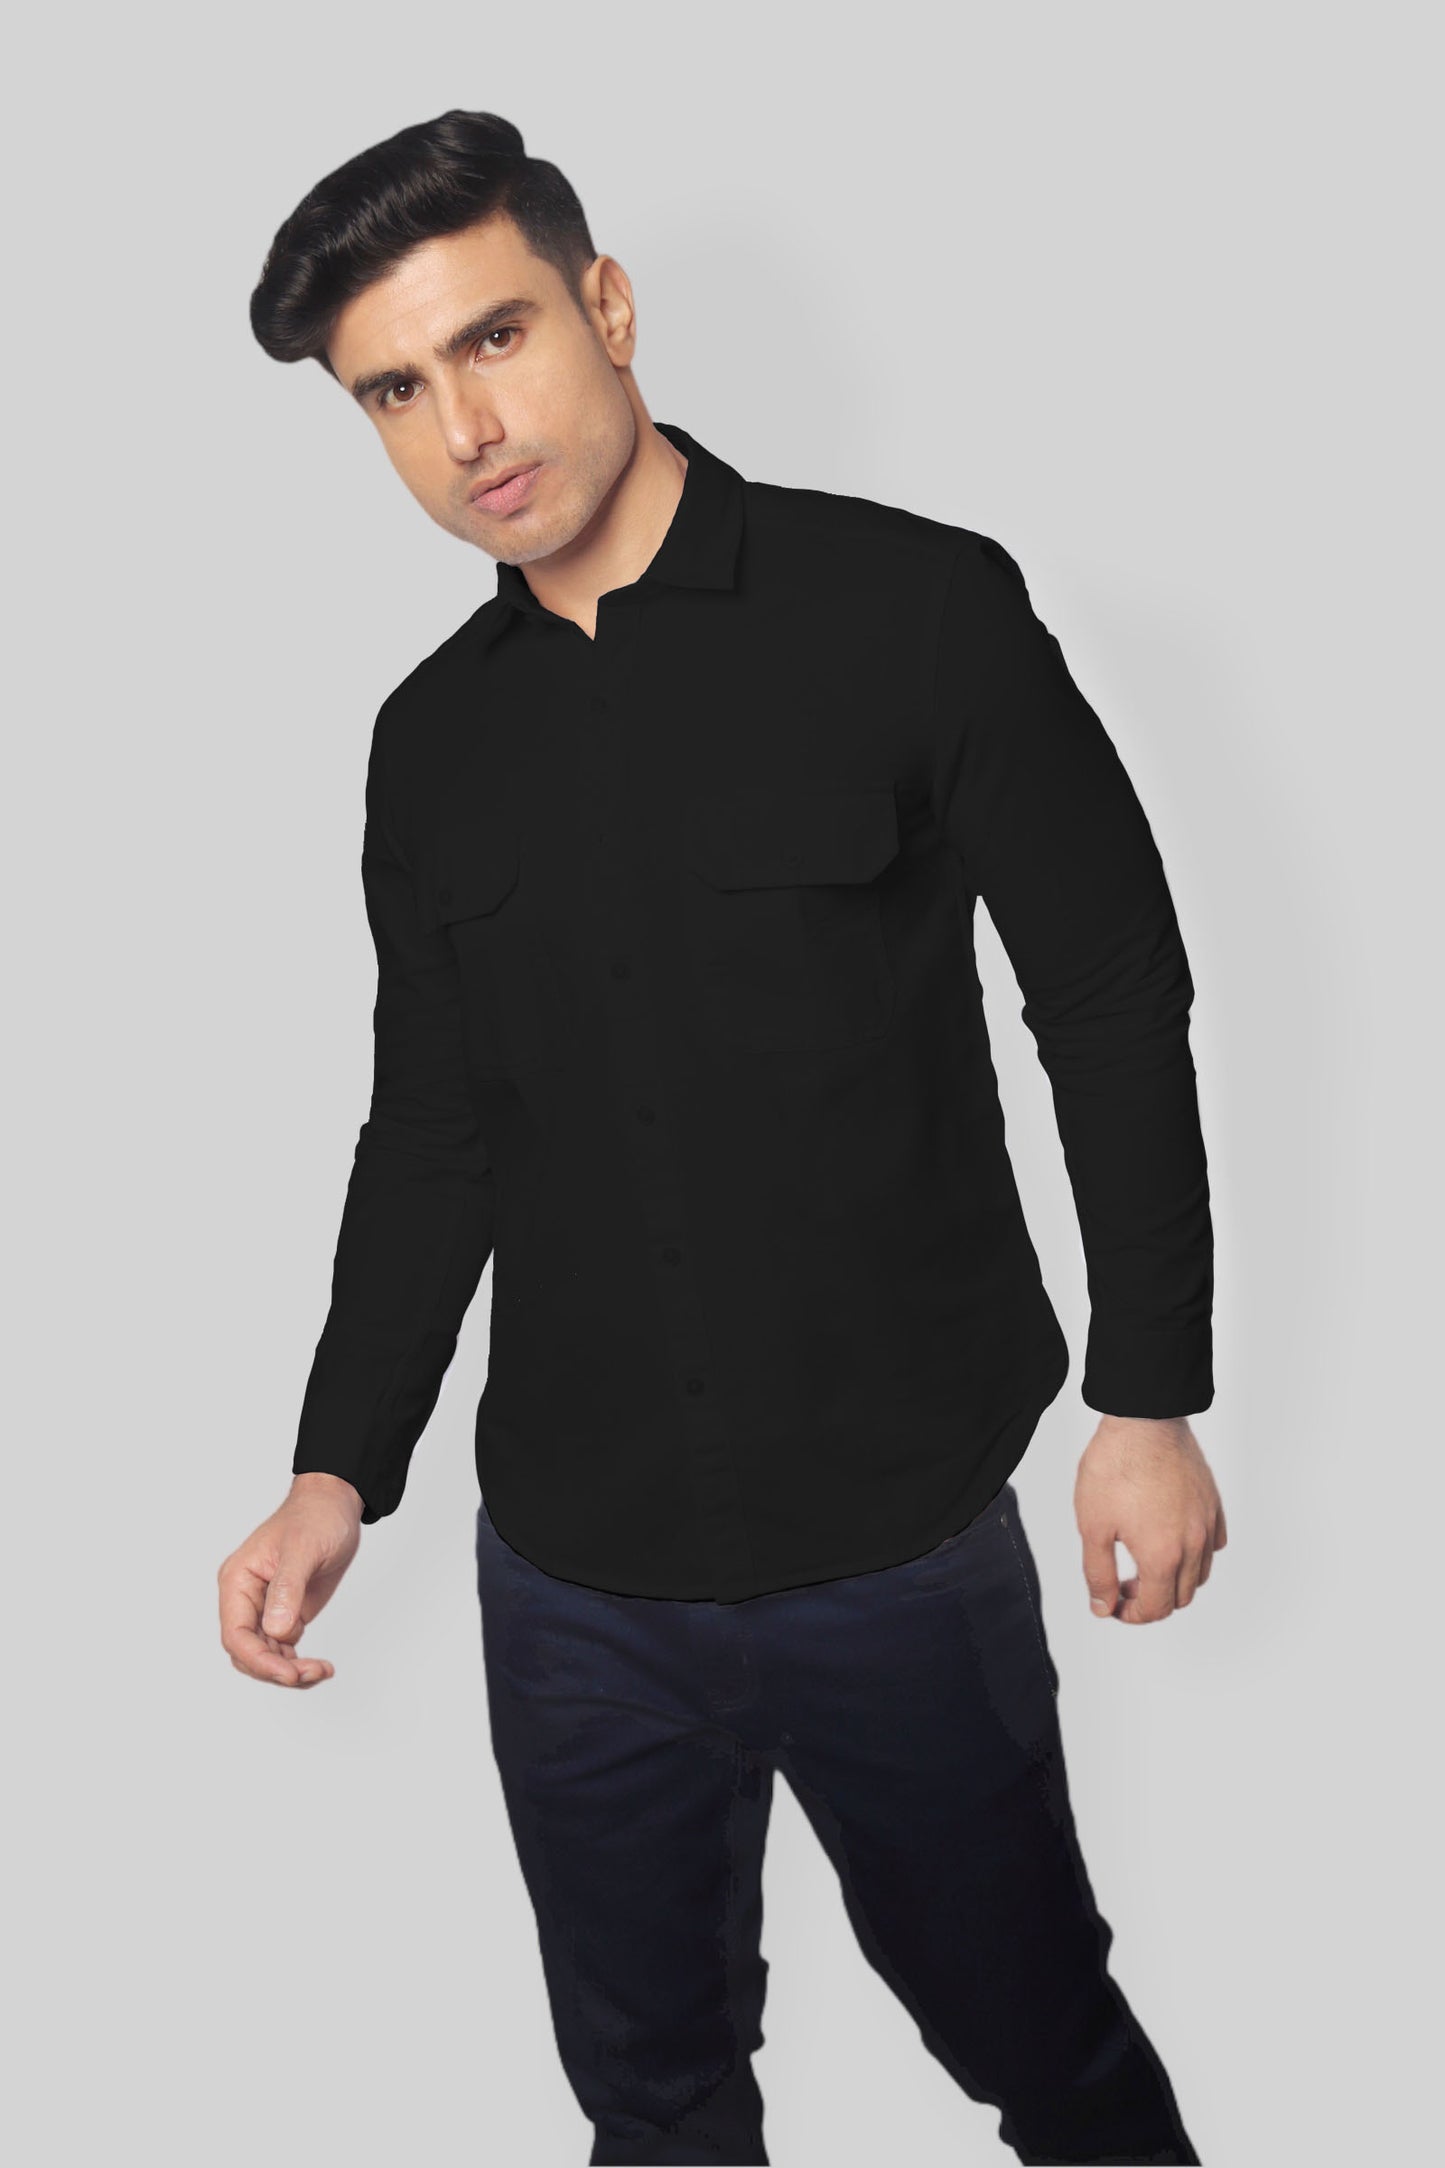 Black double pocket denim shirt for men’s